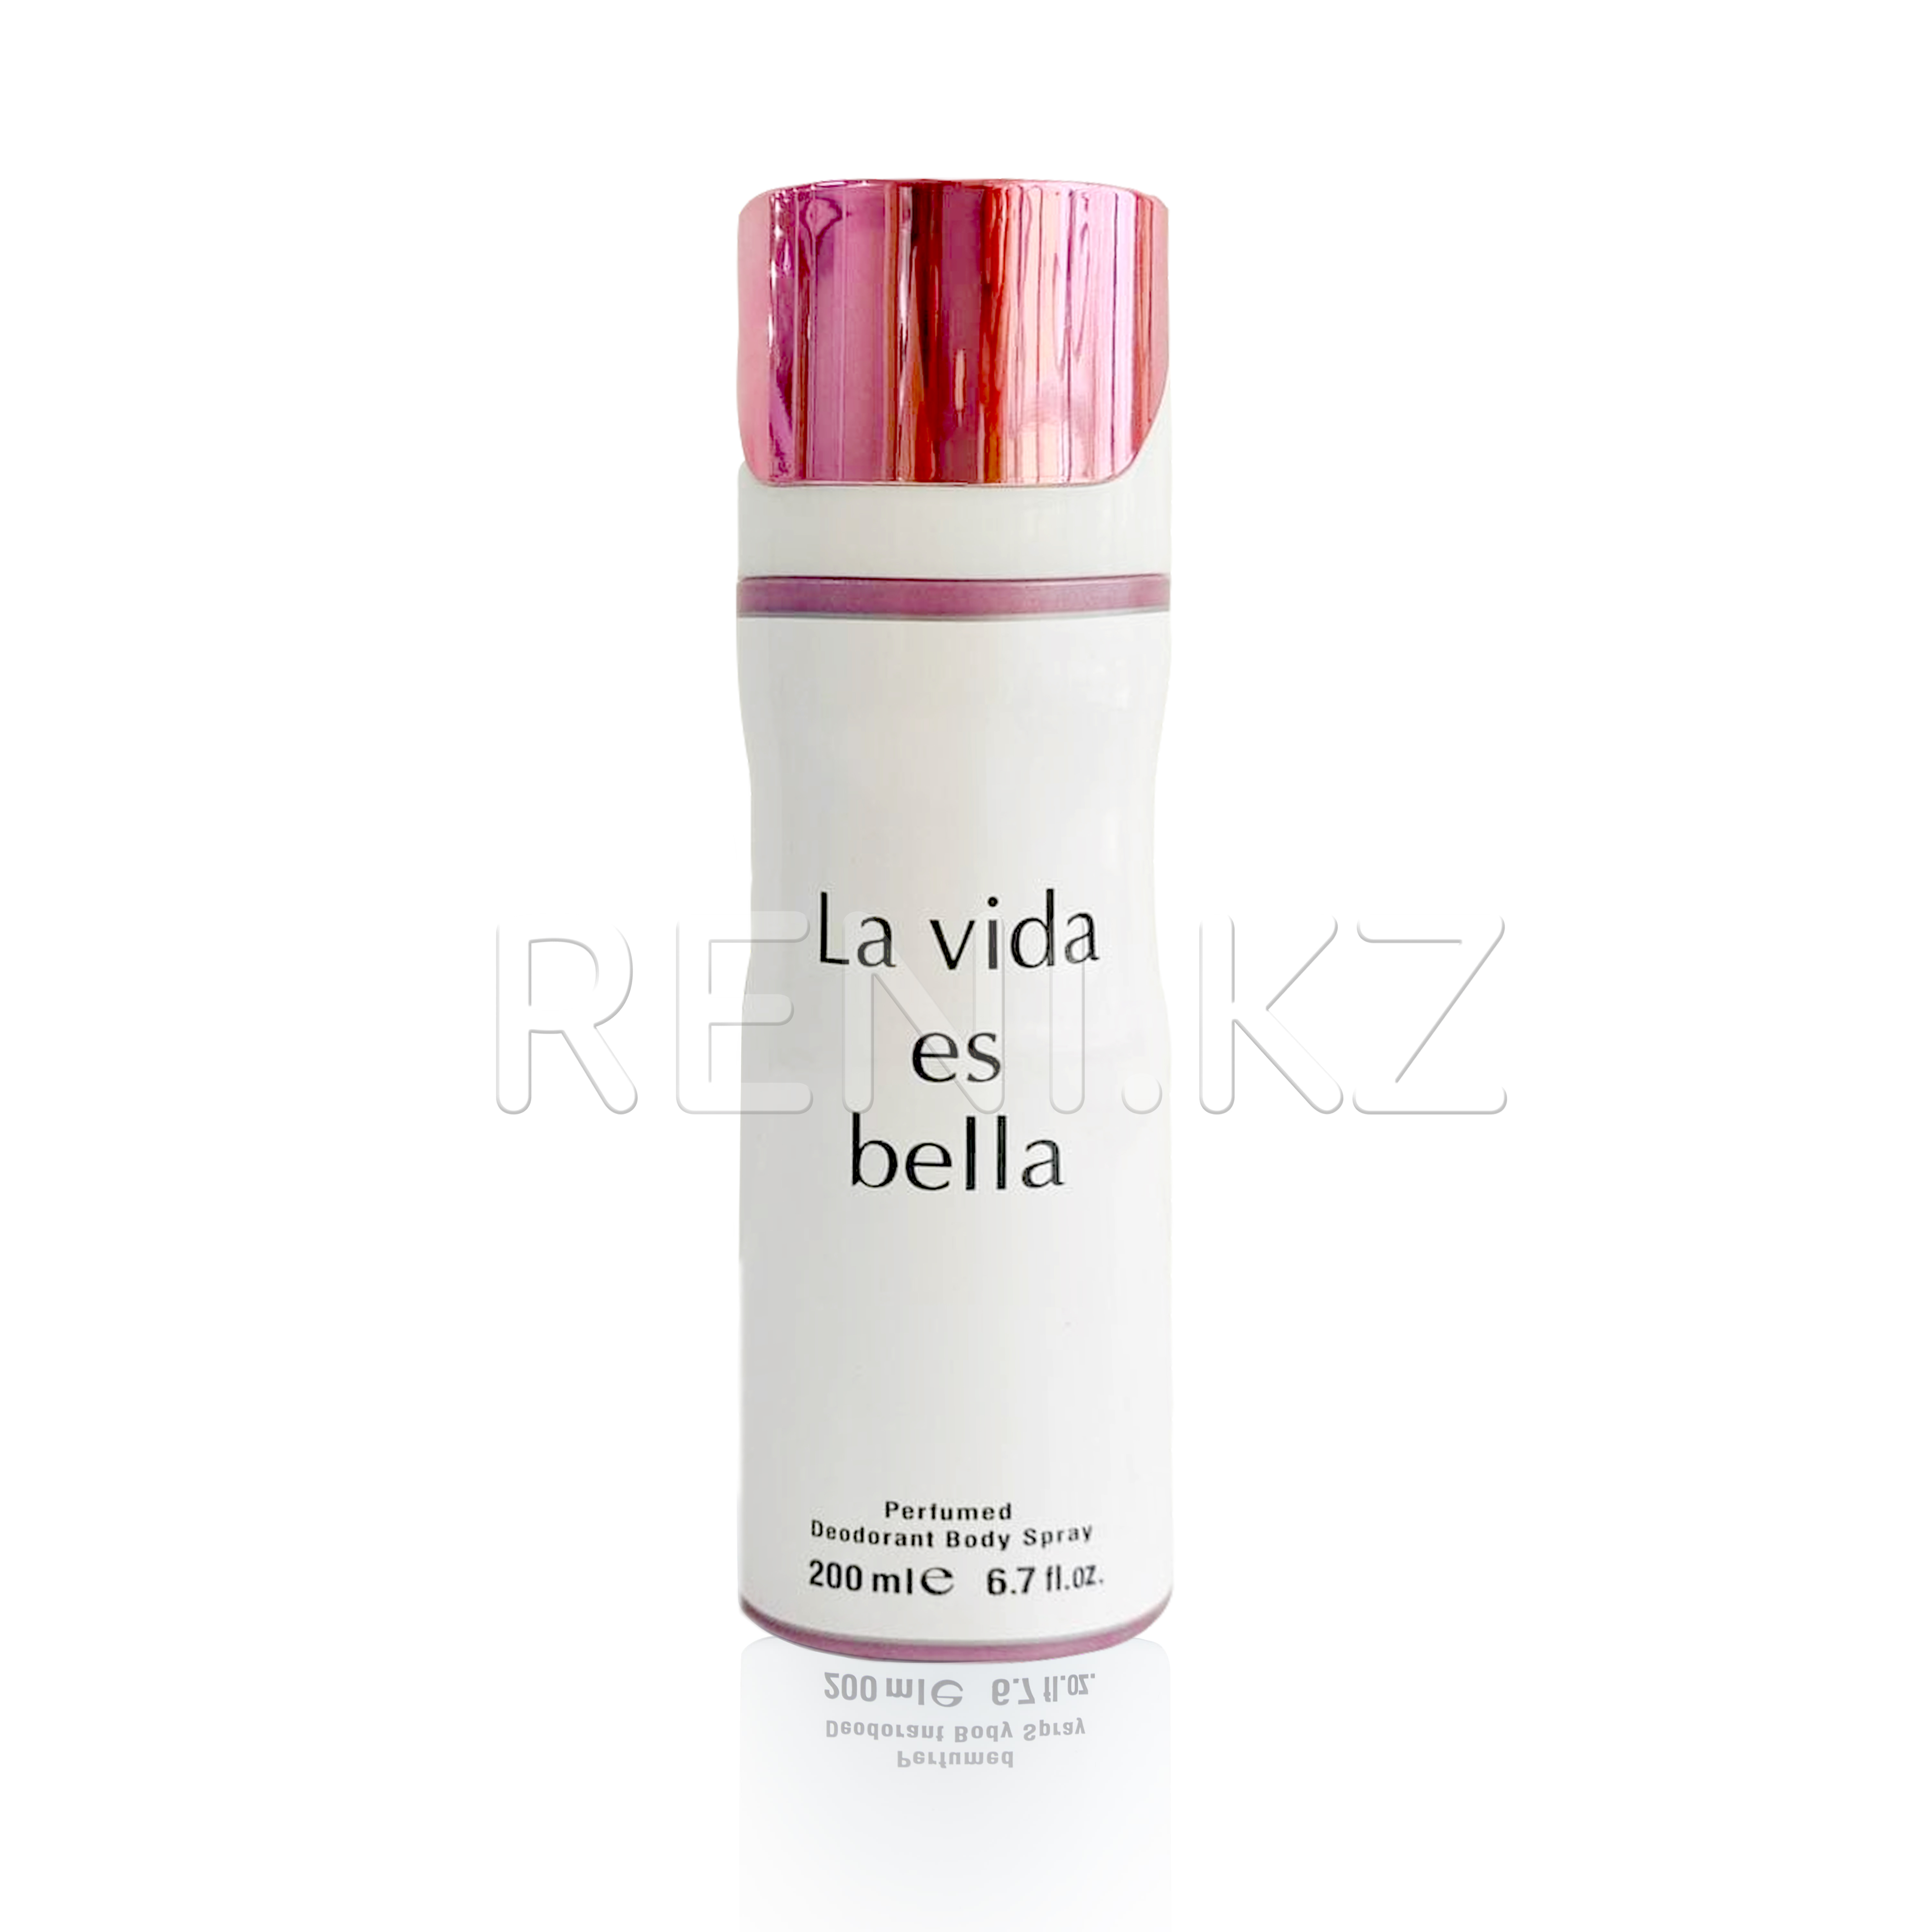 21 Парфюмированный дезодорант для тела La vida es bella, 200 мл